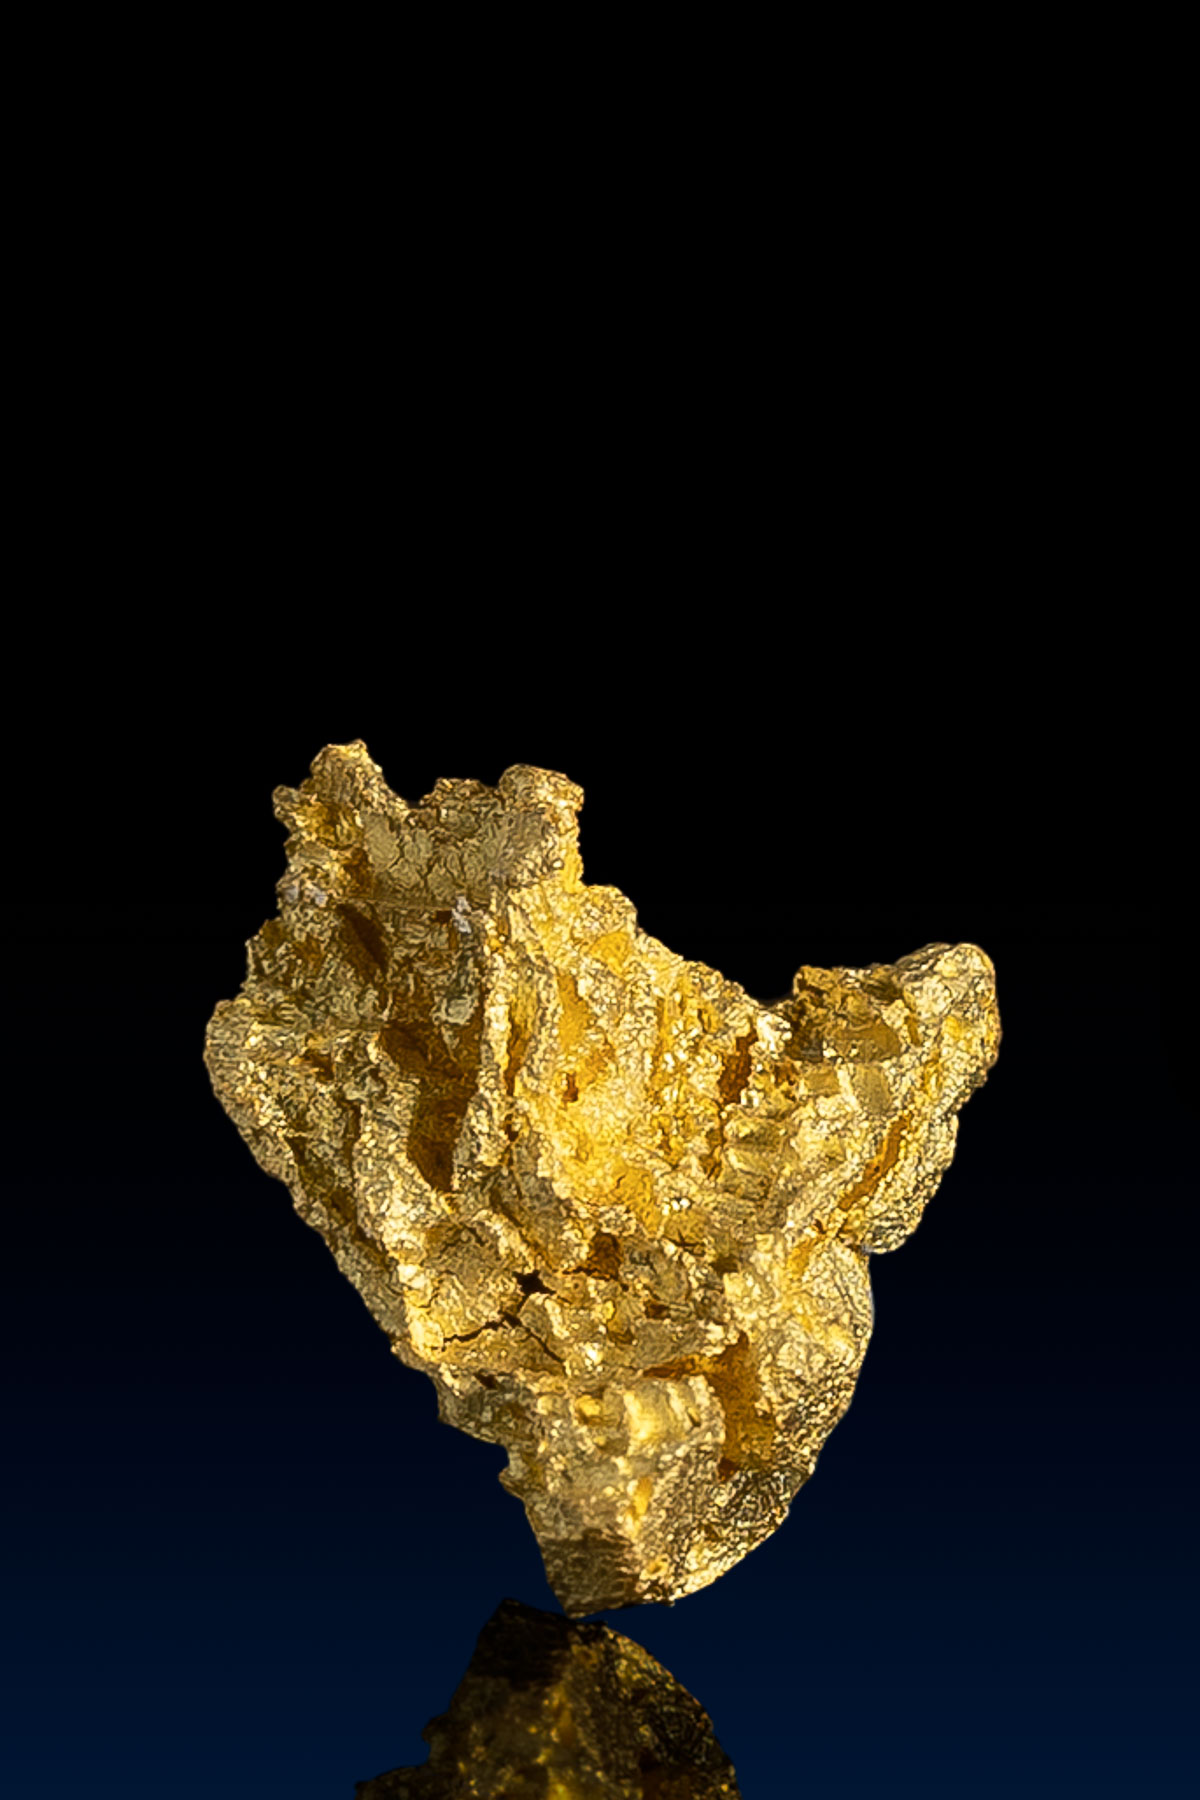 V-Shaped Nevada Natural Gold Nugget - 1.14 grams